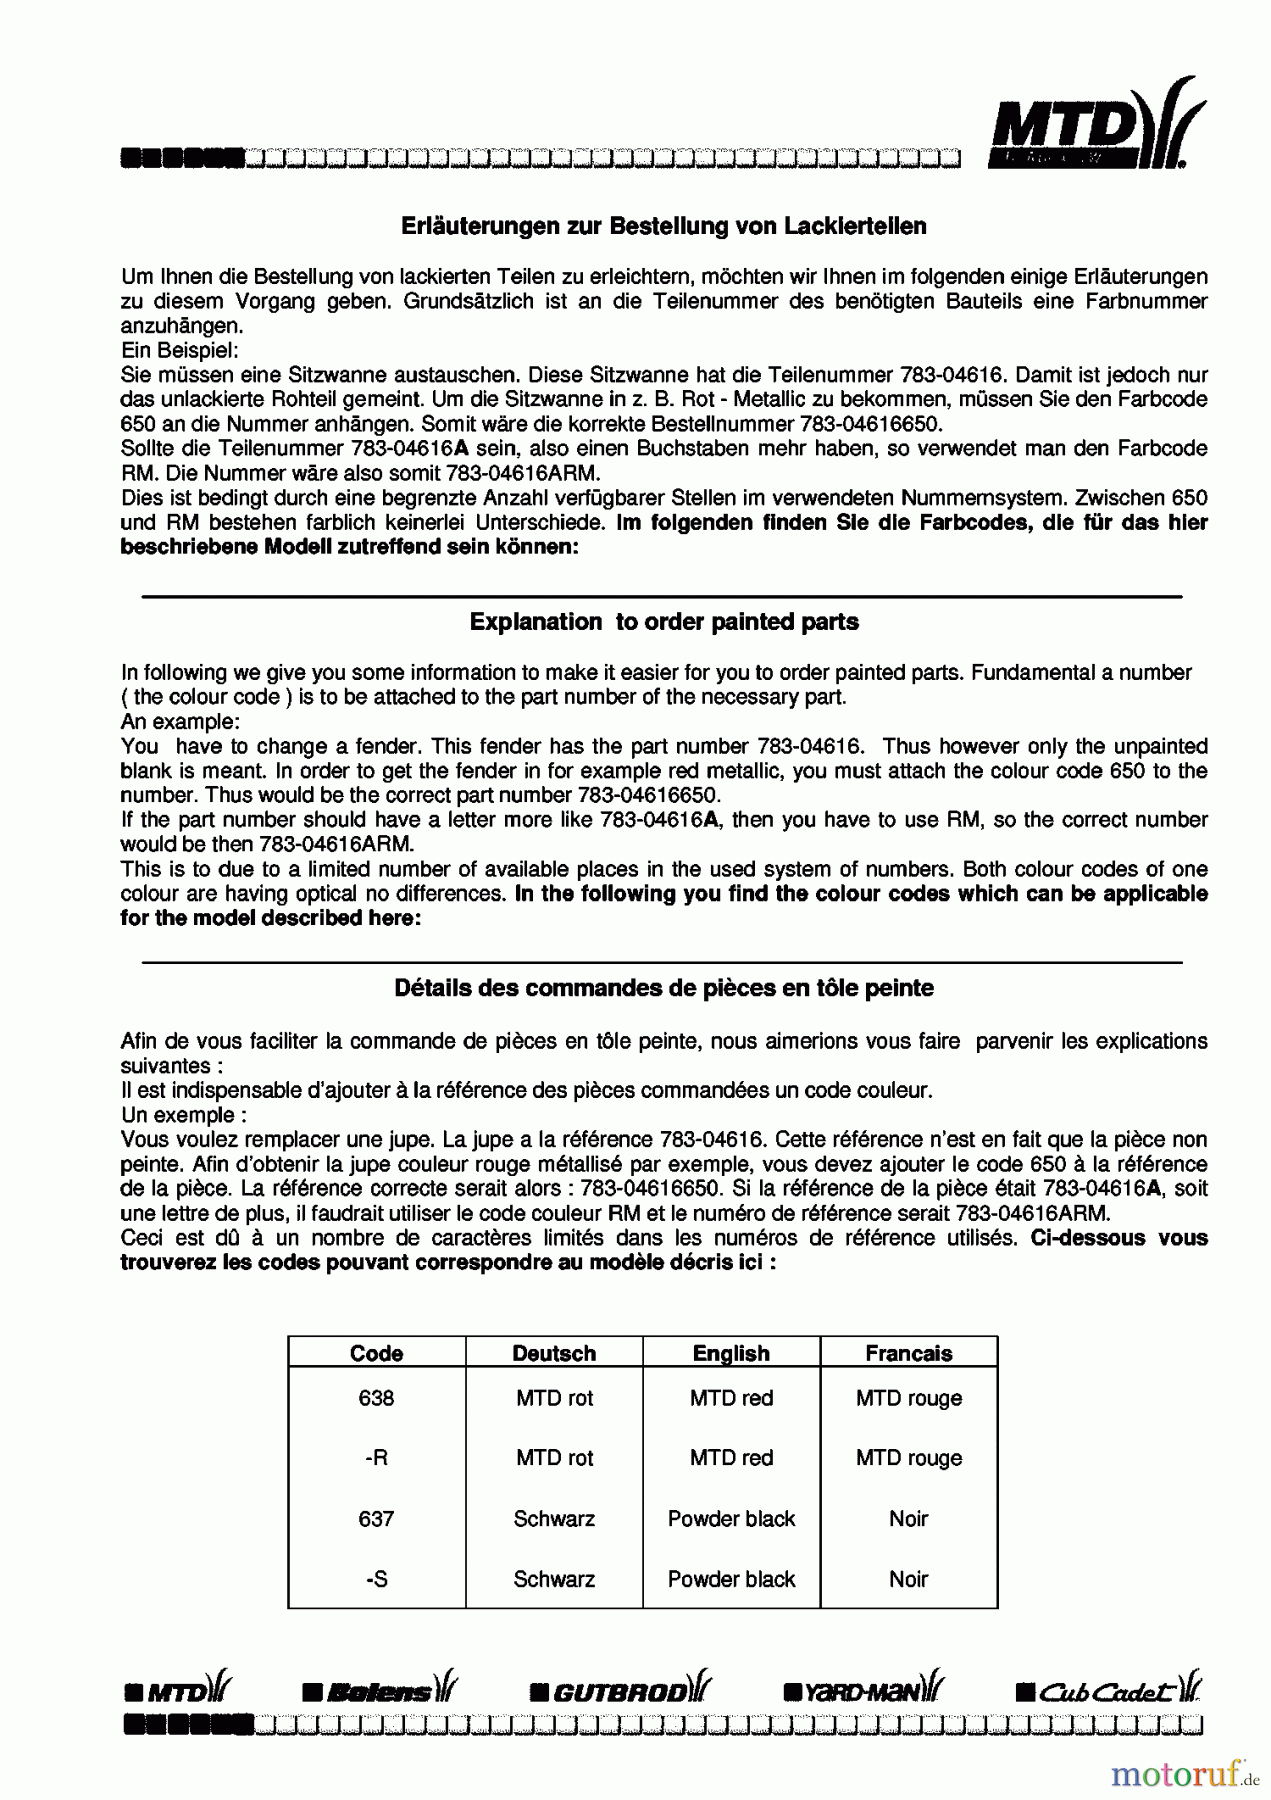  Hvc Rasentraktoren H 450 C 13BH450C609  (1998) Farbcode Information